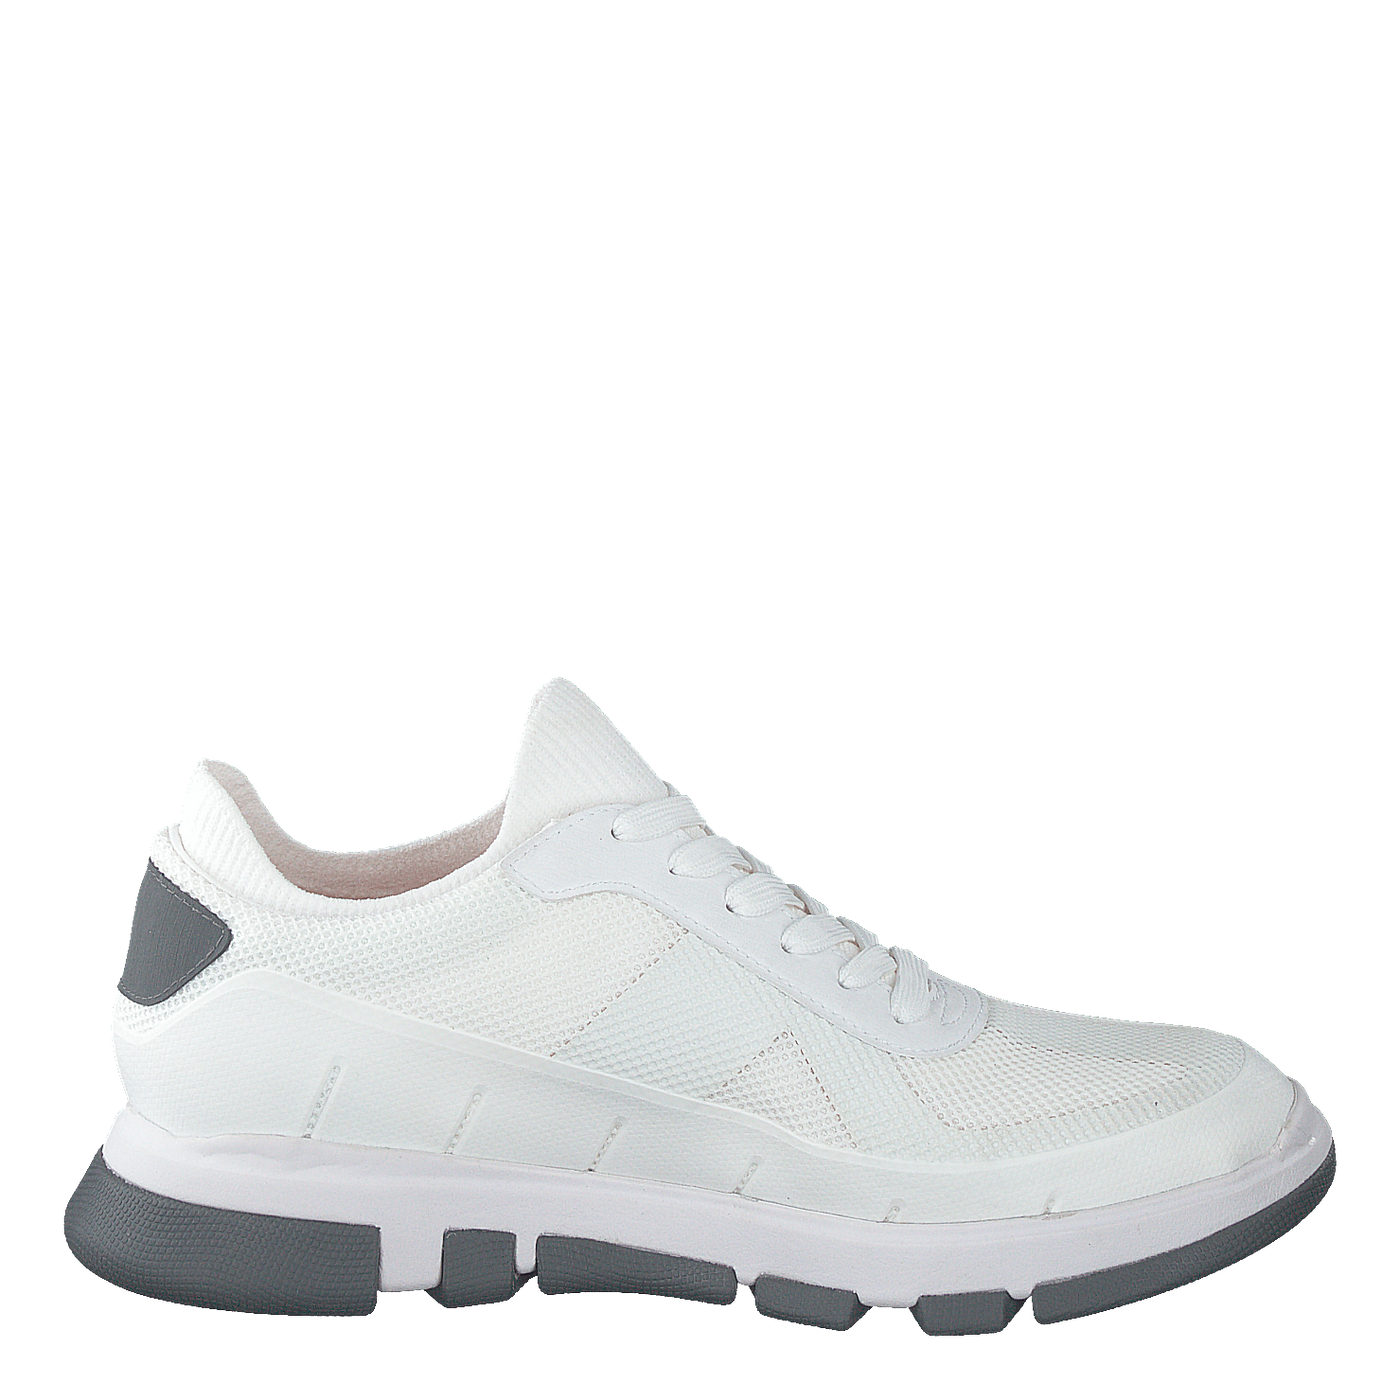 City Hiker Sneaker White/gray